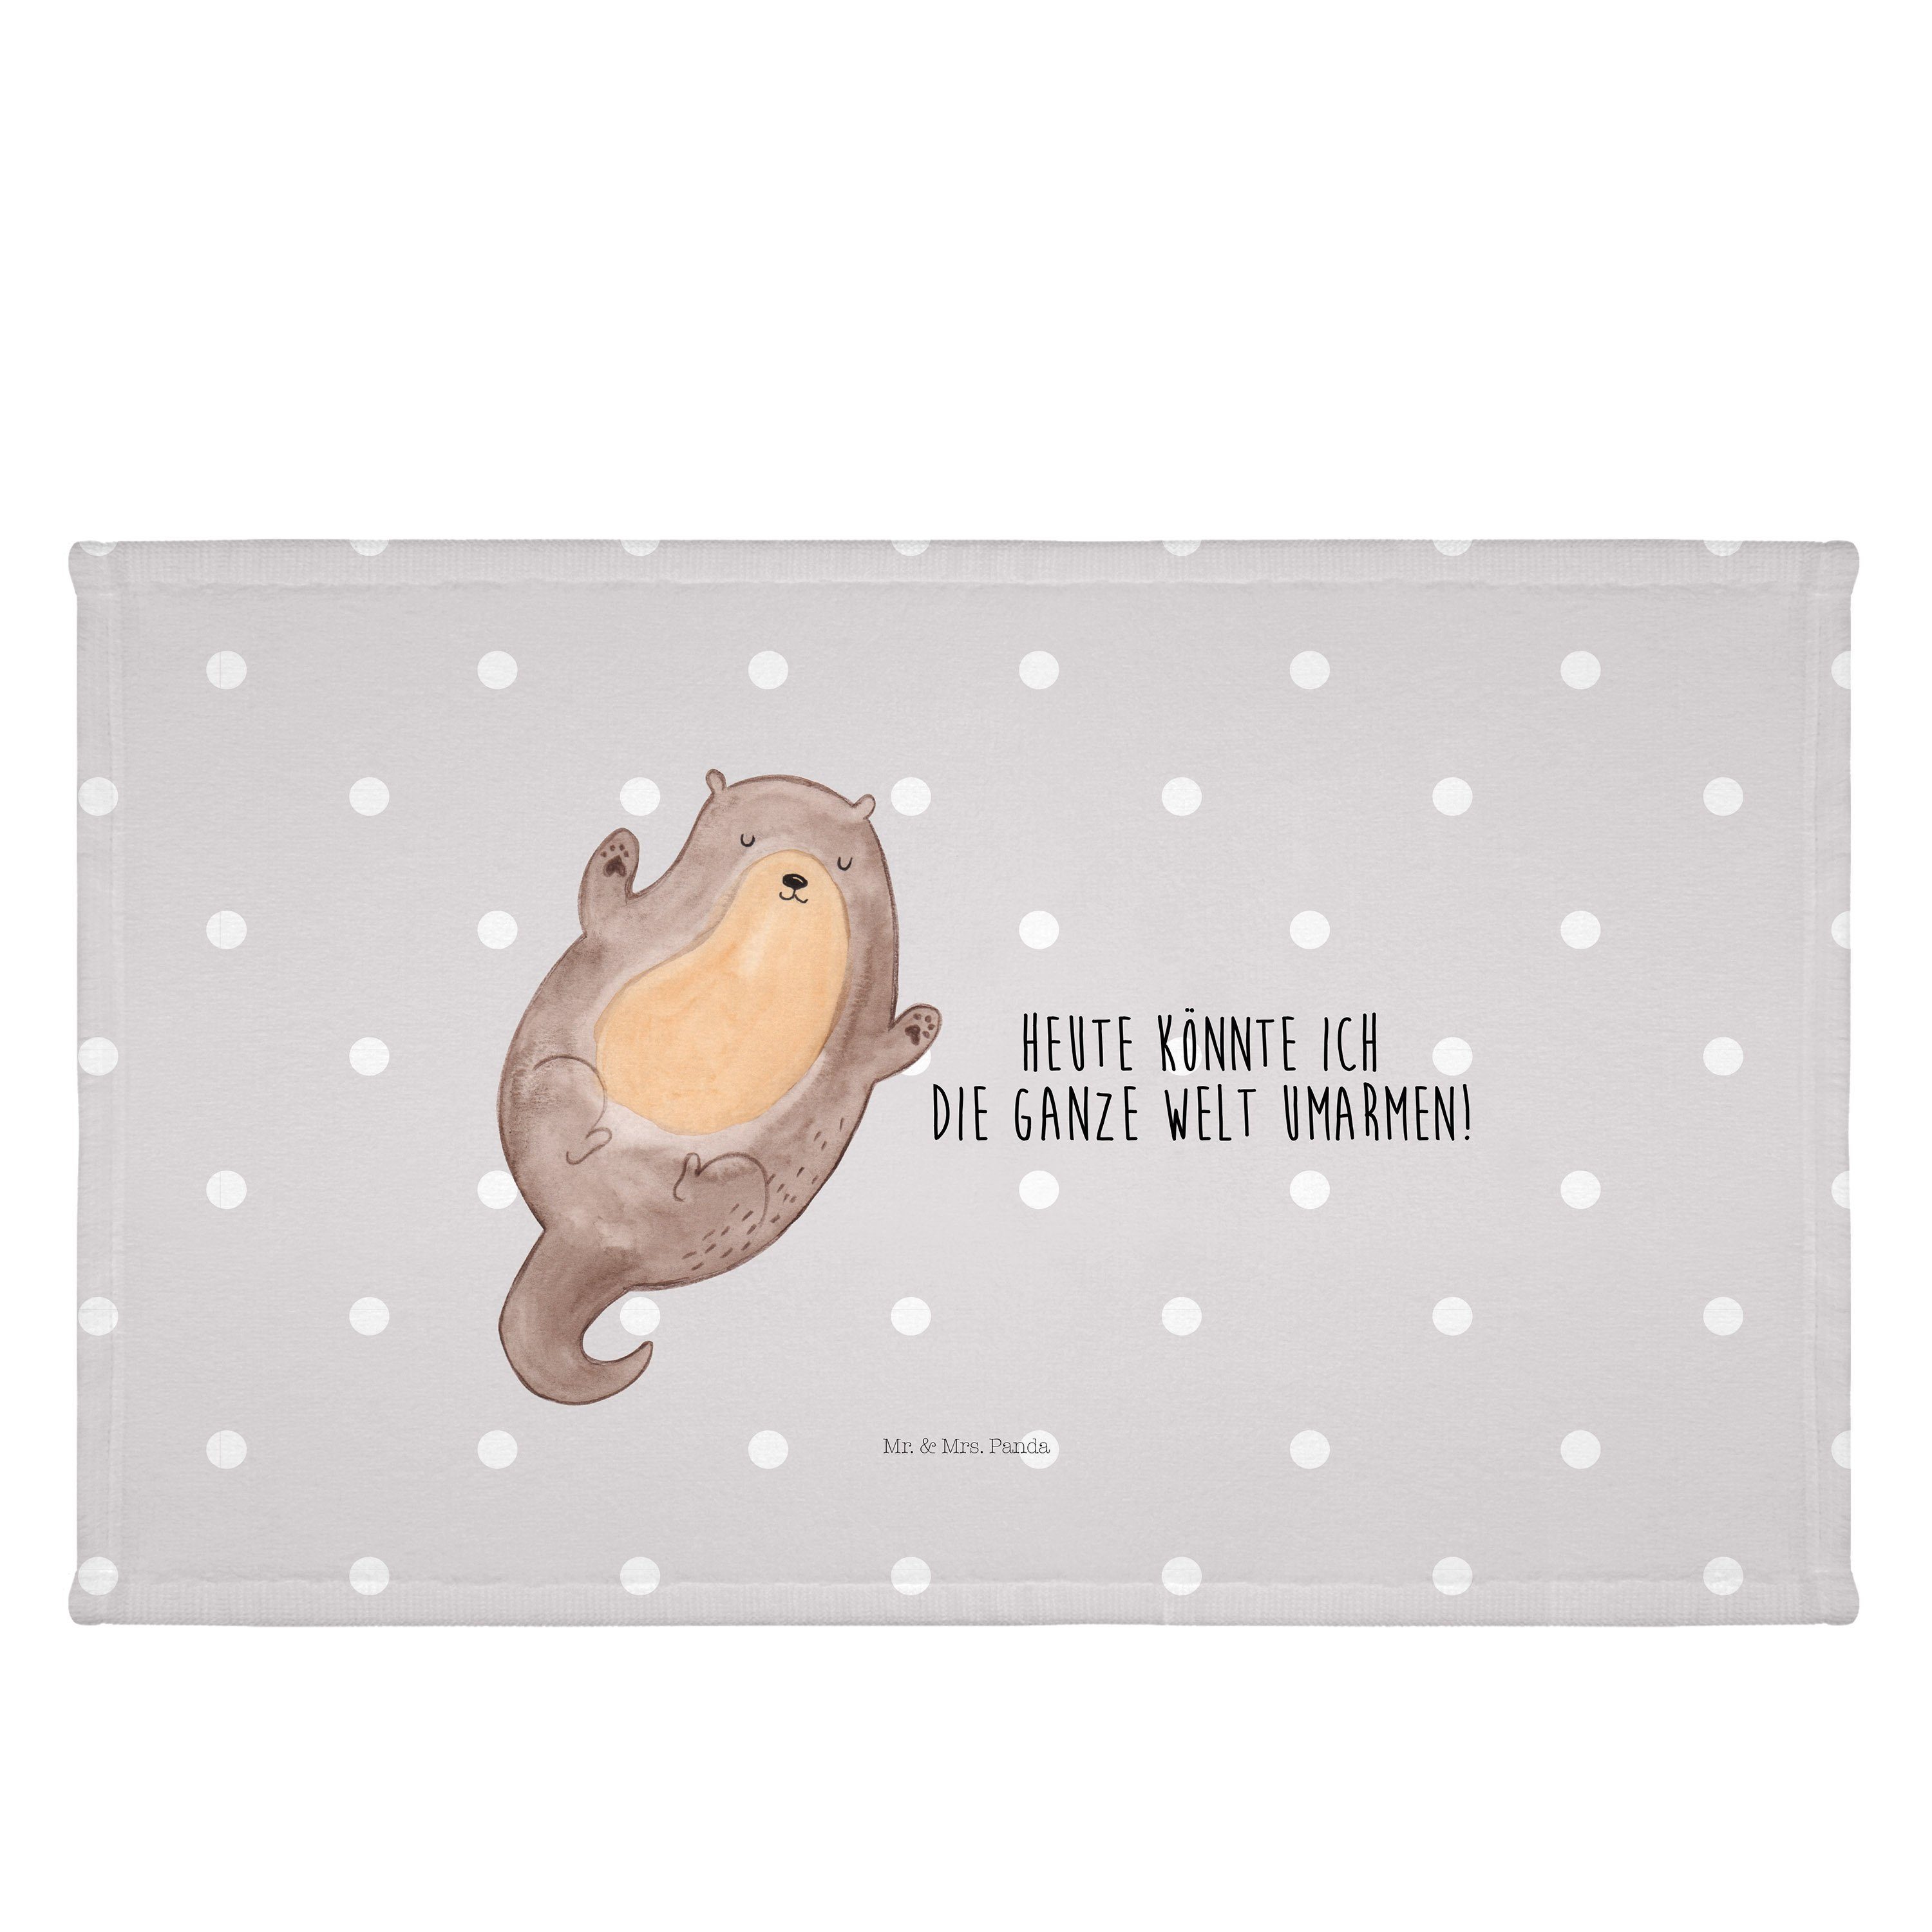 Mr. & Mrs. Panda Handtuch Otter Umarmen - Grau Pastell - Geschenk, groß, hallo, Handtuch, Hand, (1-St)